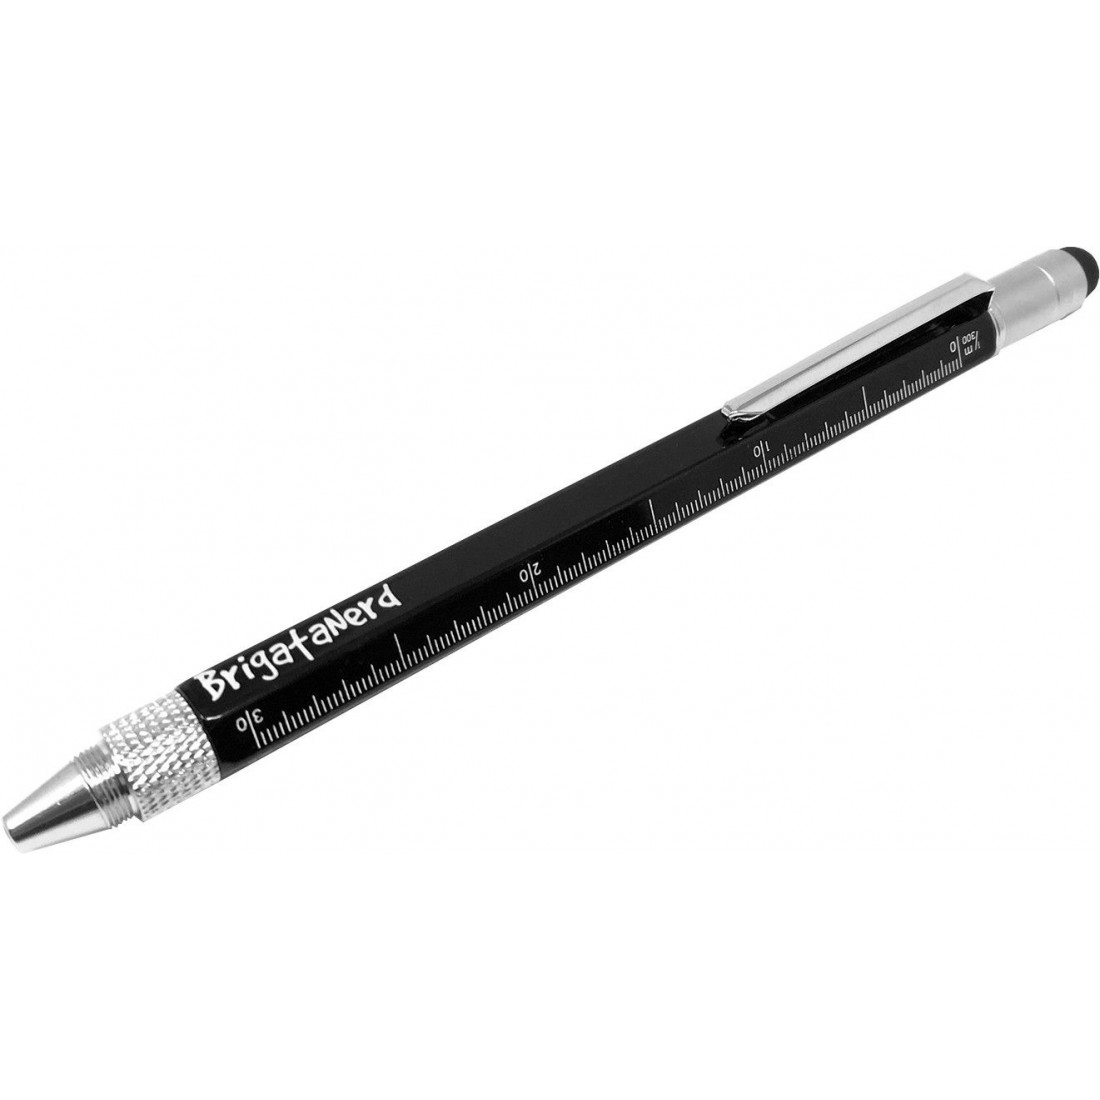 Penna Multifuzione Cheater 6 in 1 con righello centimetri e pollici, livella,  penna a sfera, pennino touch e cacciavite